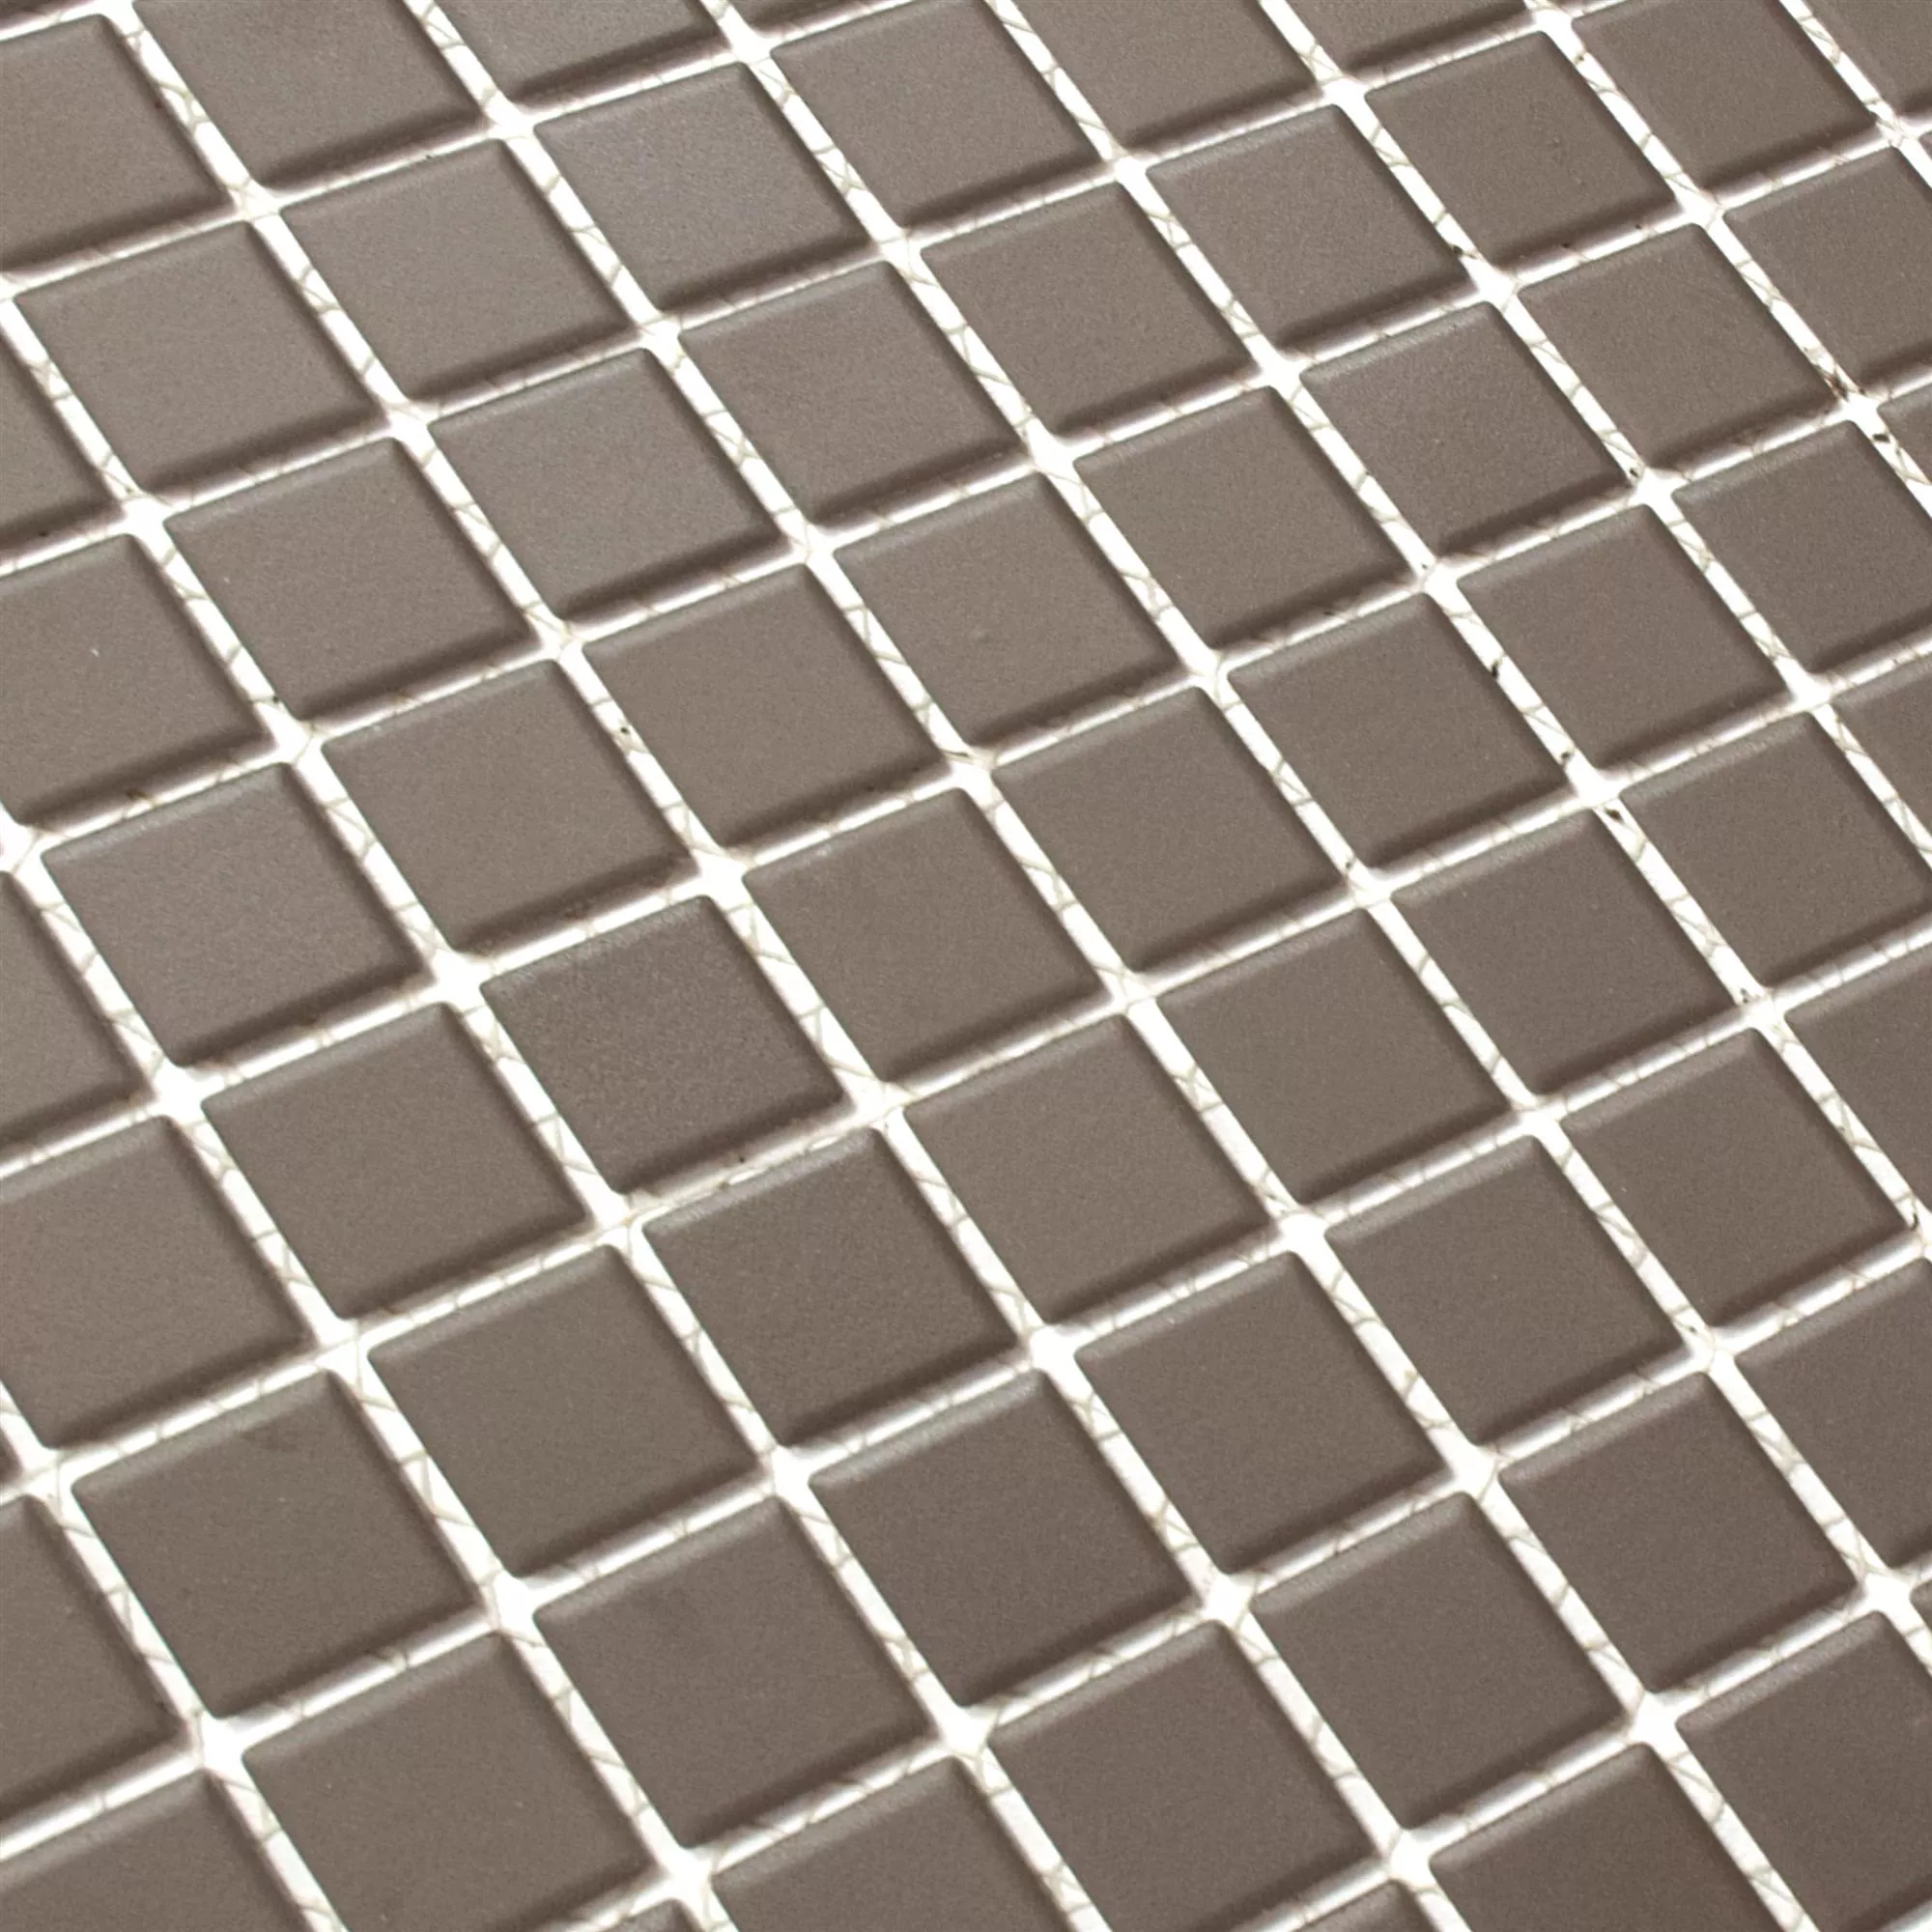 Sample Ceramic Mosaic Miranda Non-Slip Brown Unglazed Q25